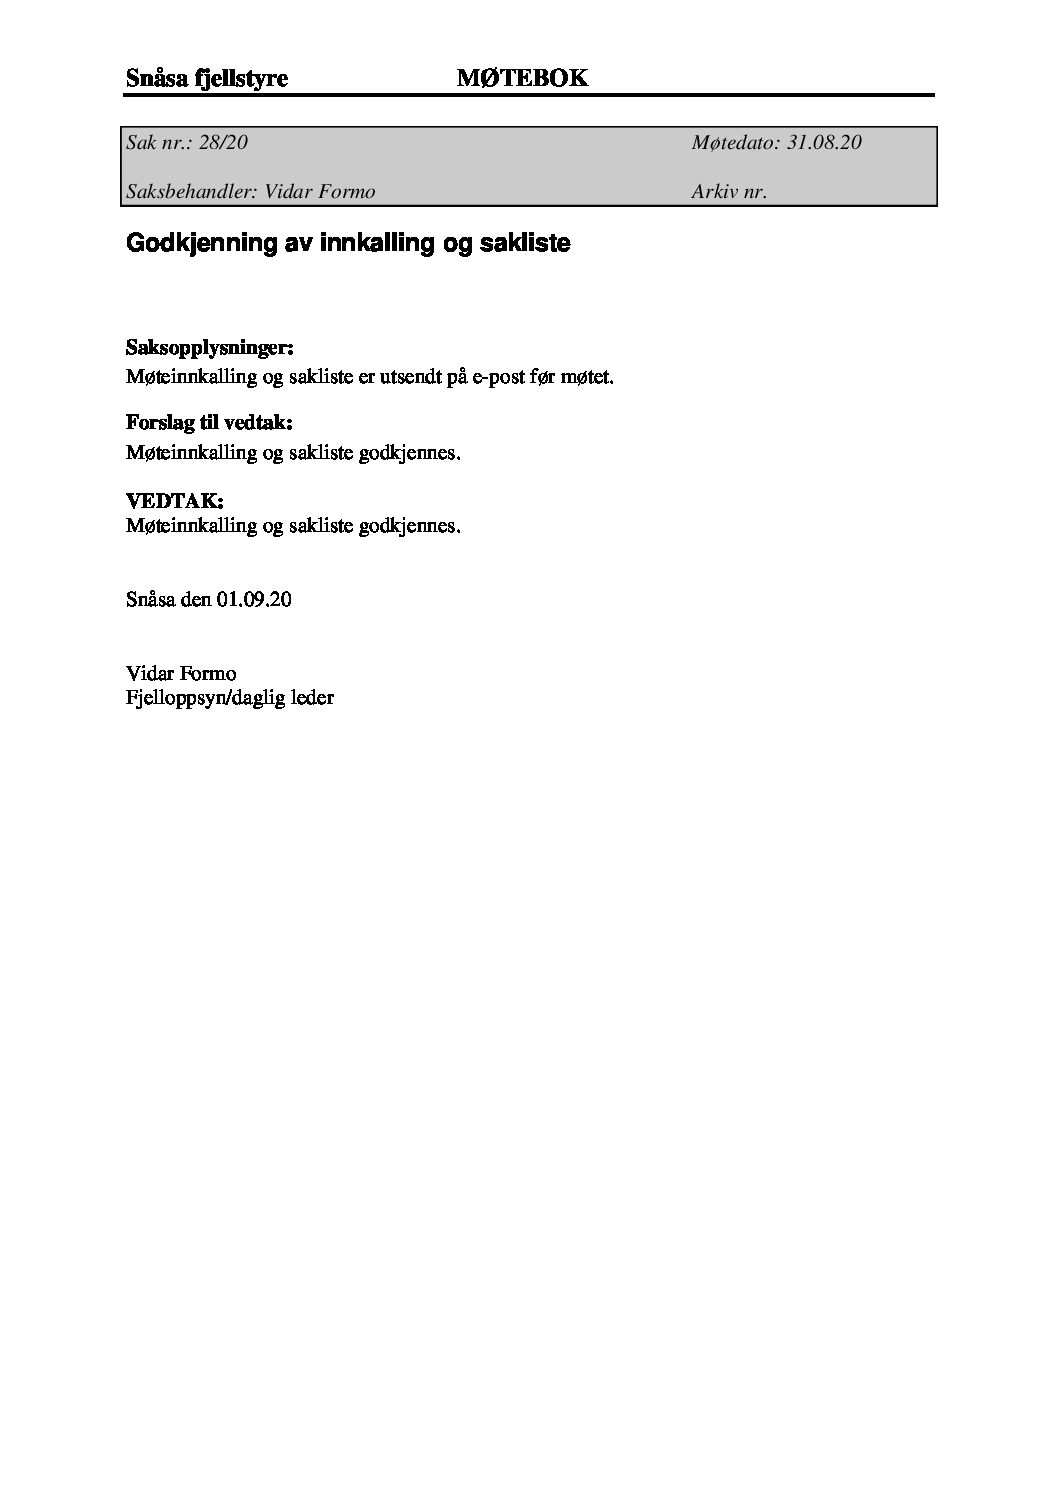 styremote-31-08-2020-pdf.jpg